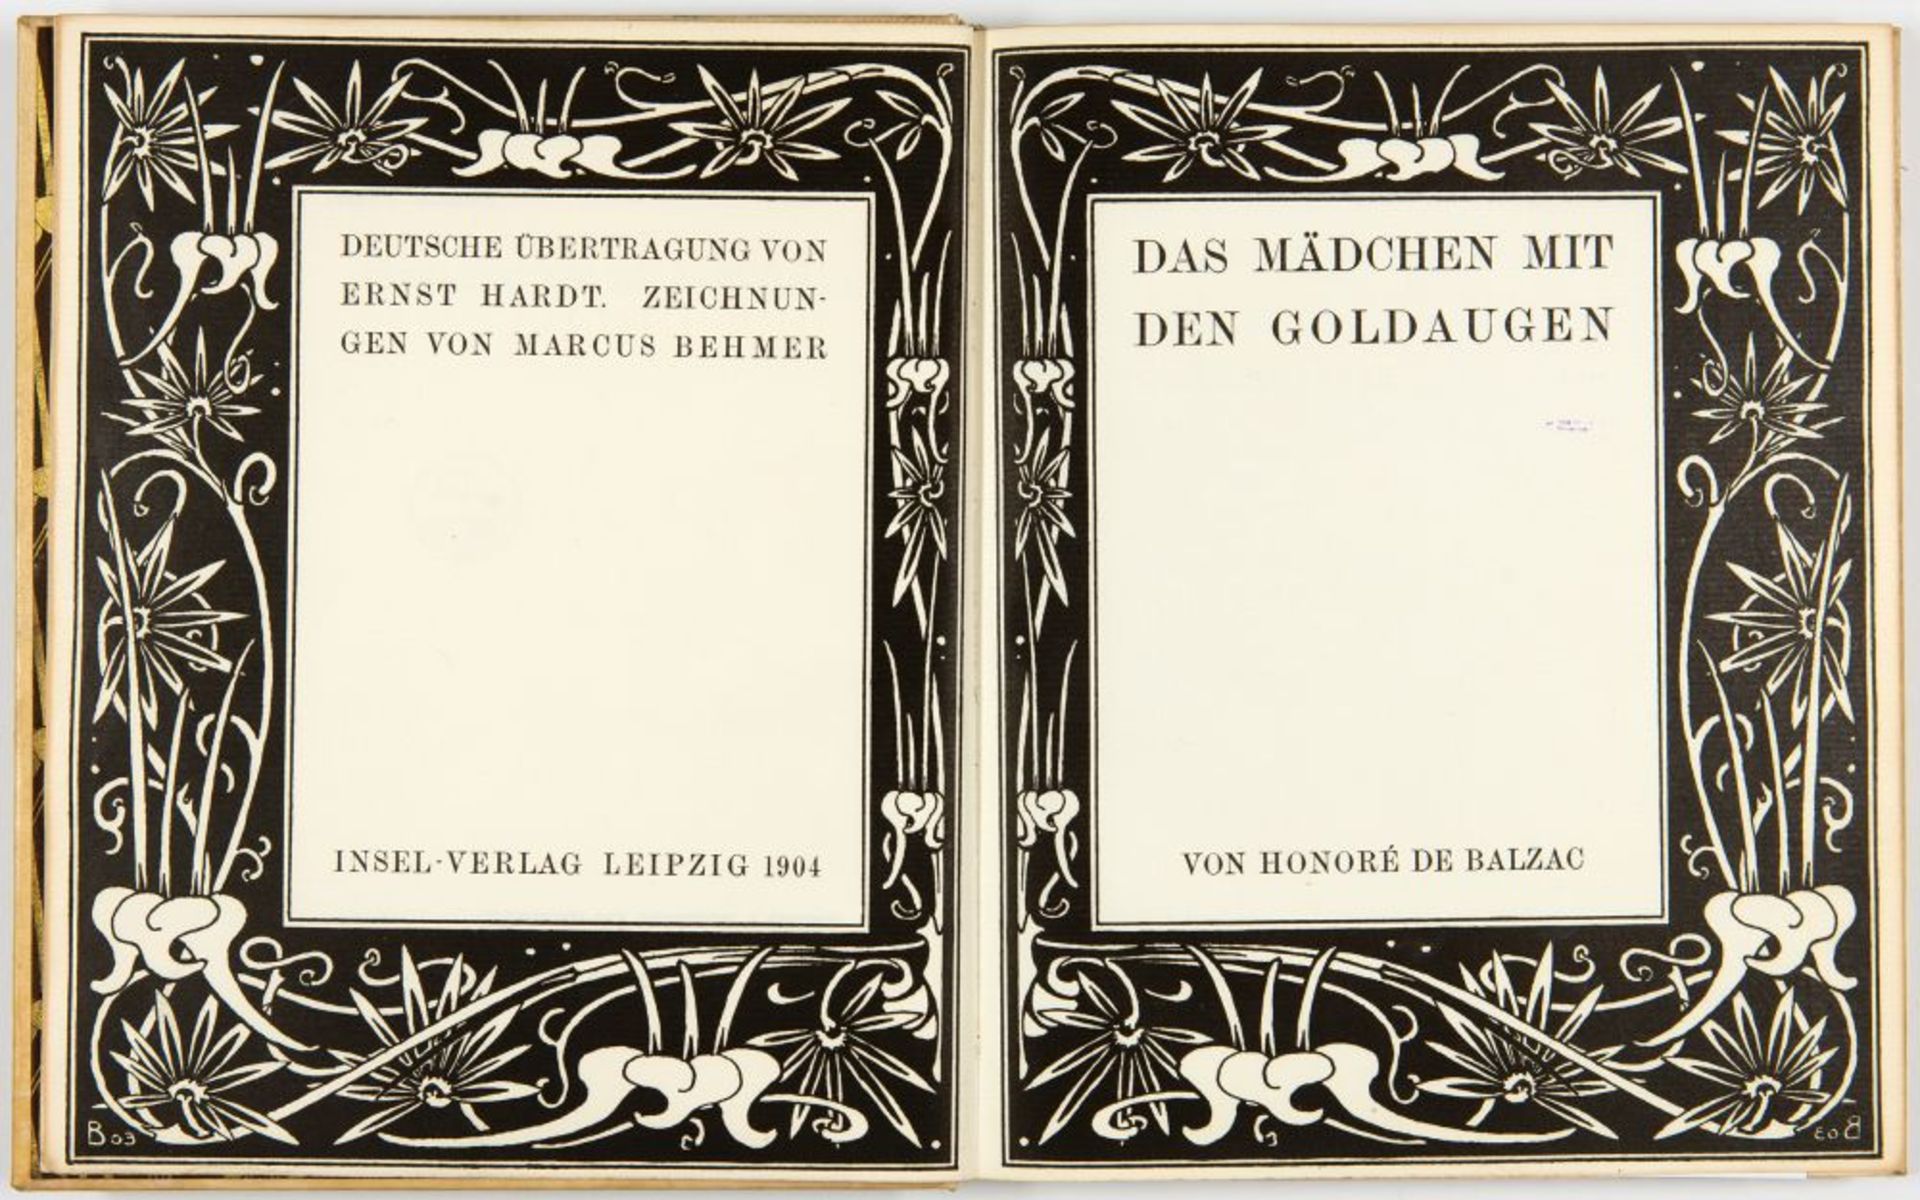 H. de Balzac / M. Behmer, Das Mädchen mit den Goldaugen. Lpz. 1904. - Image 2 of 3